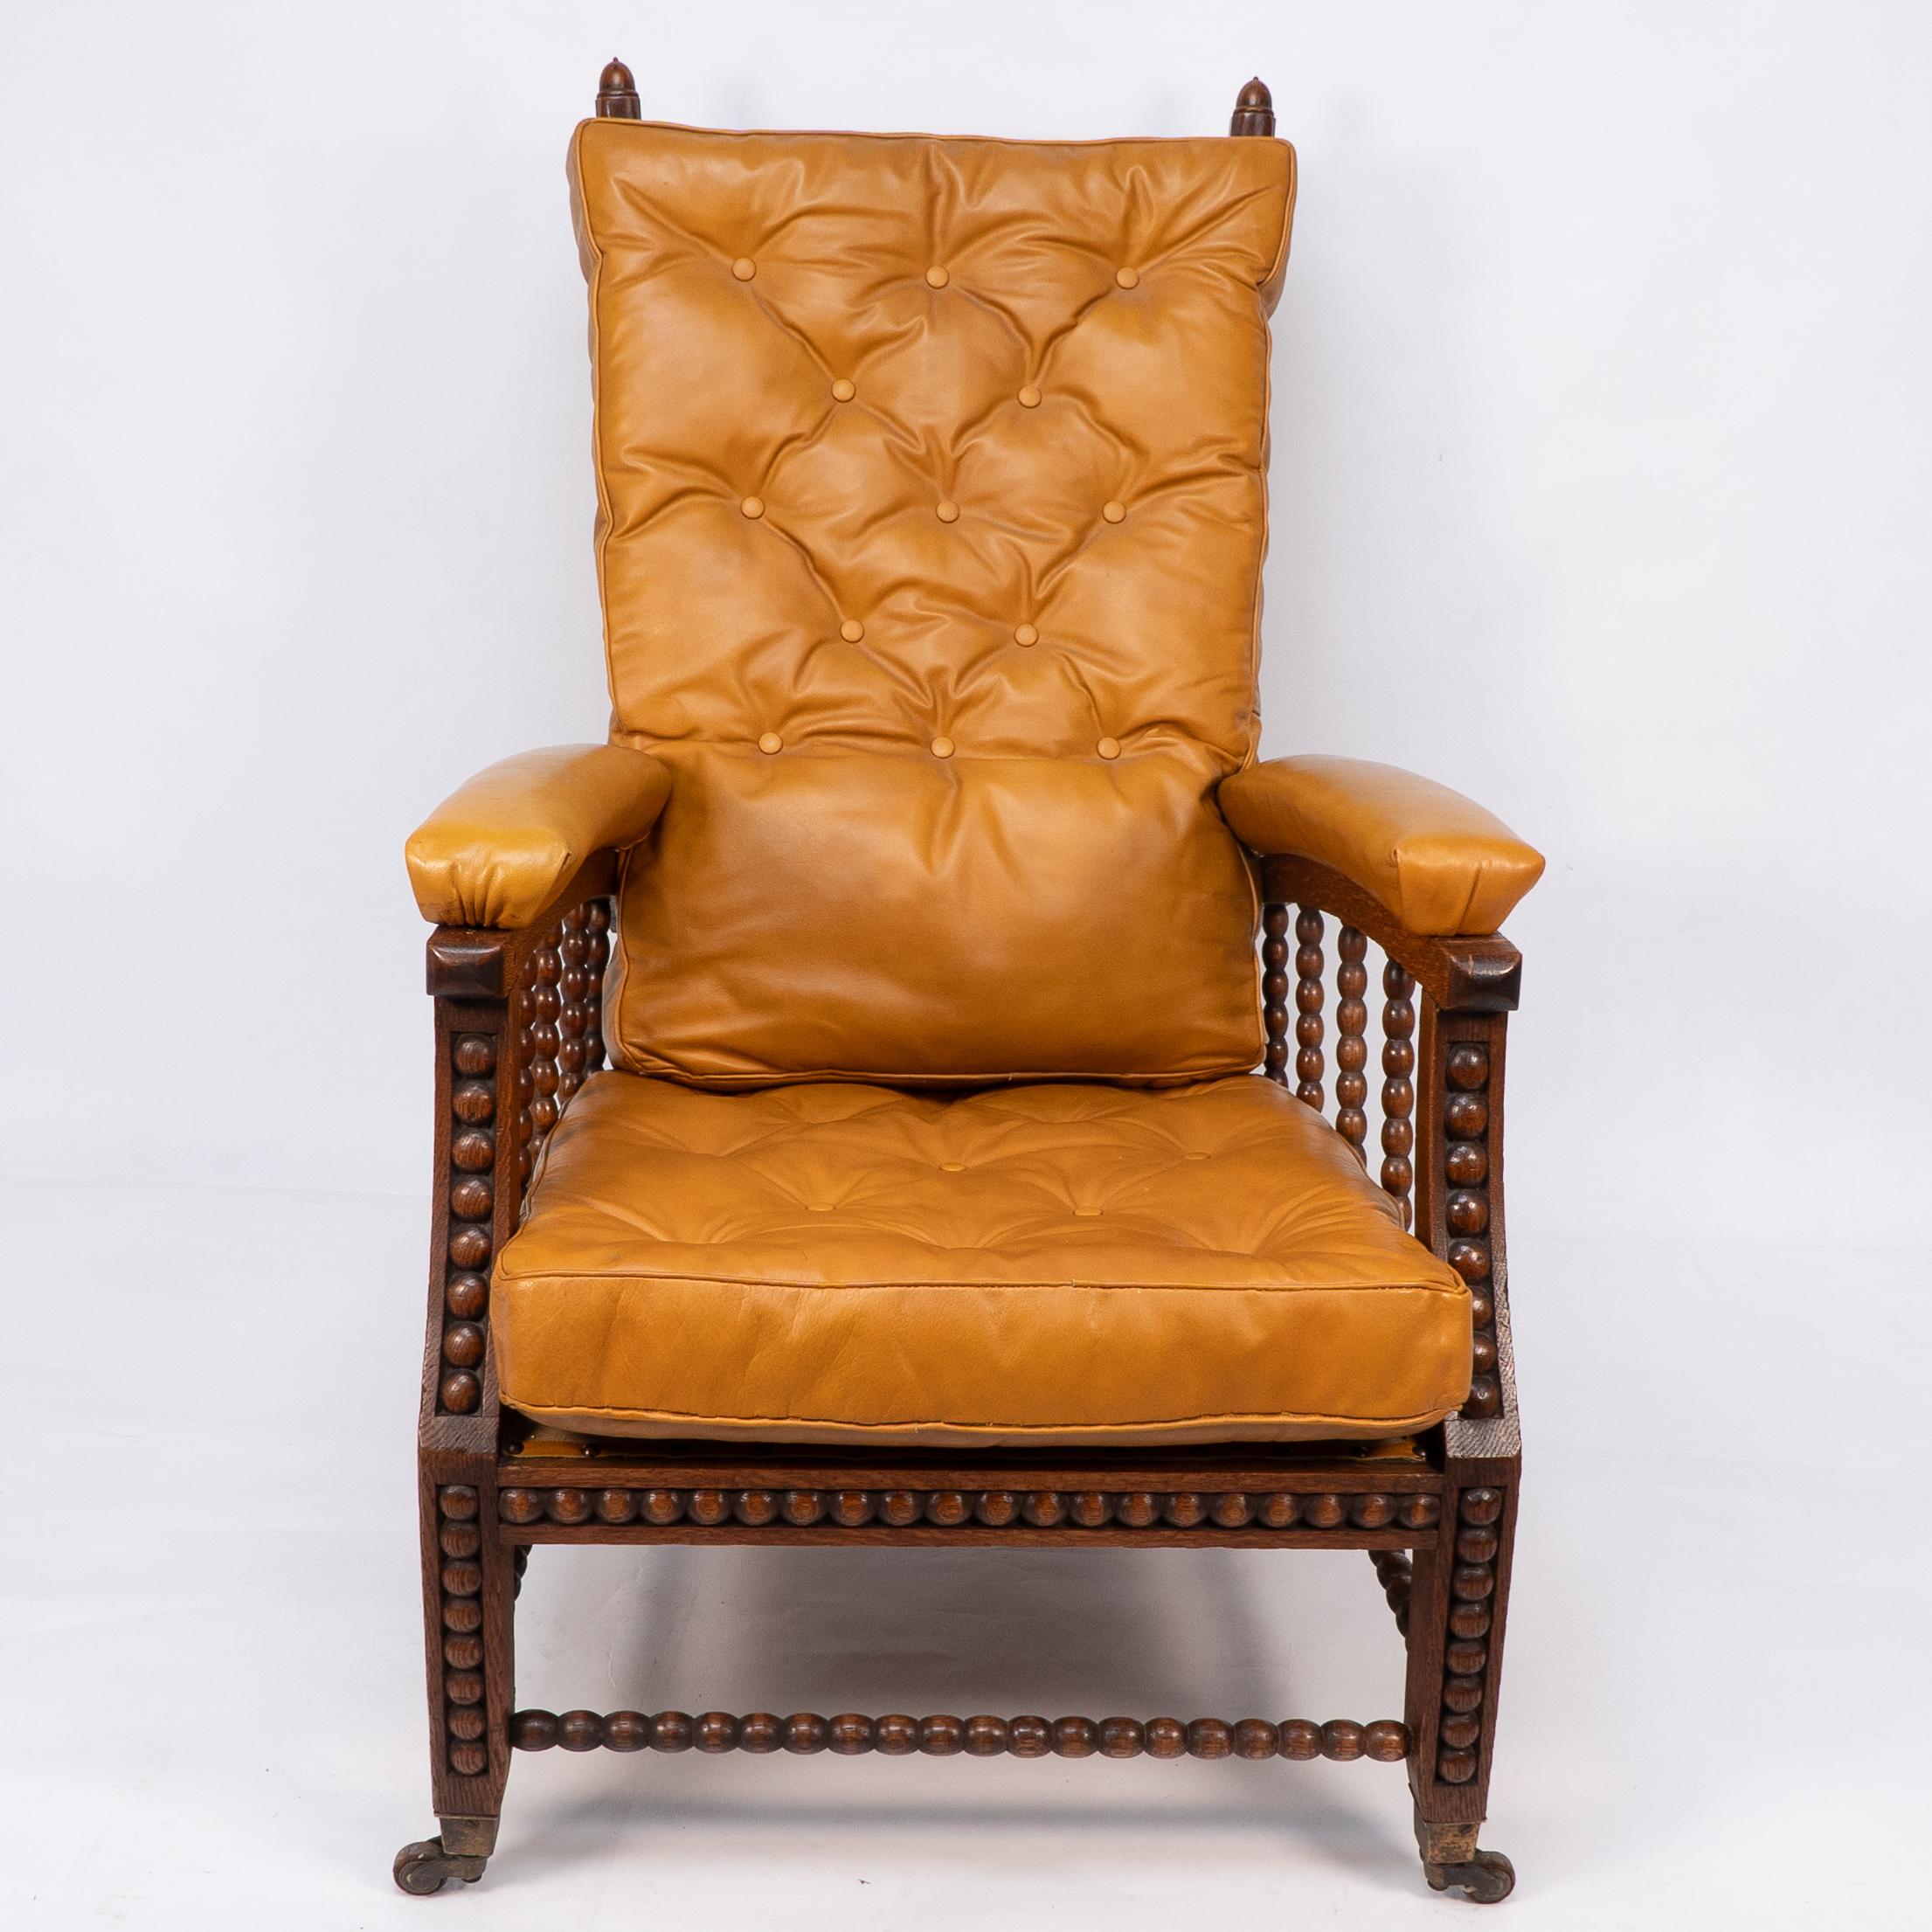 Phillips Webb pour Morris and Co. Conçu en 1866.
Rare fauteuil inclinable réglable en chêne du mouvement esthétique, recouvert d'un dossier en cuir fauve de bonne qualité. Les bras arqués avec accoudoirs en cuir sont reliés aux pieds arqués par des